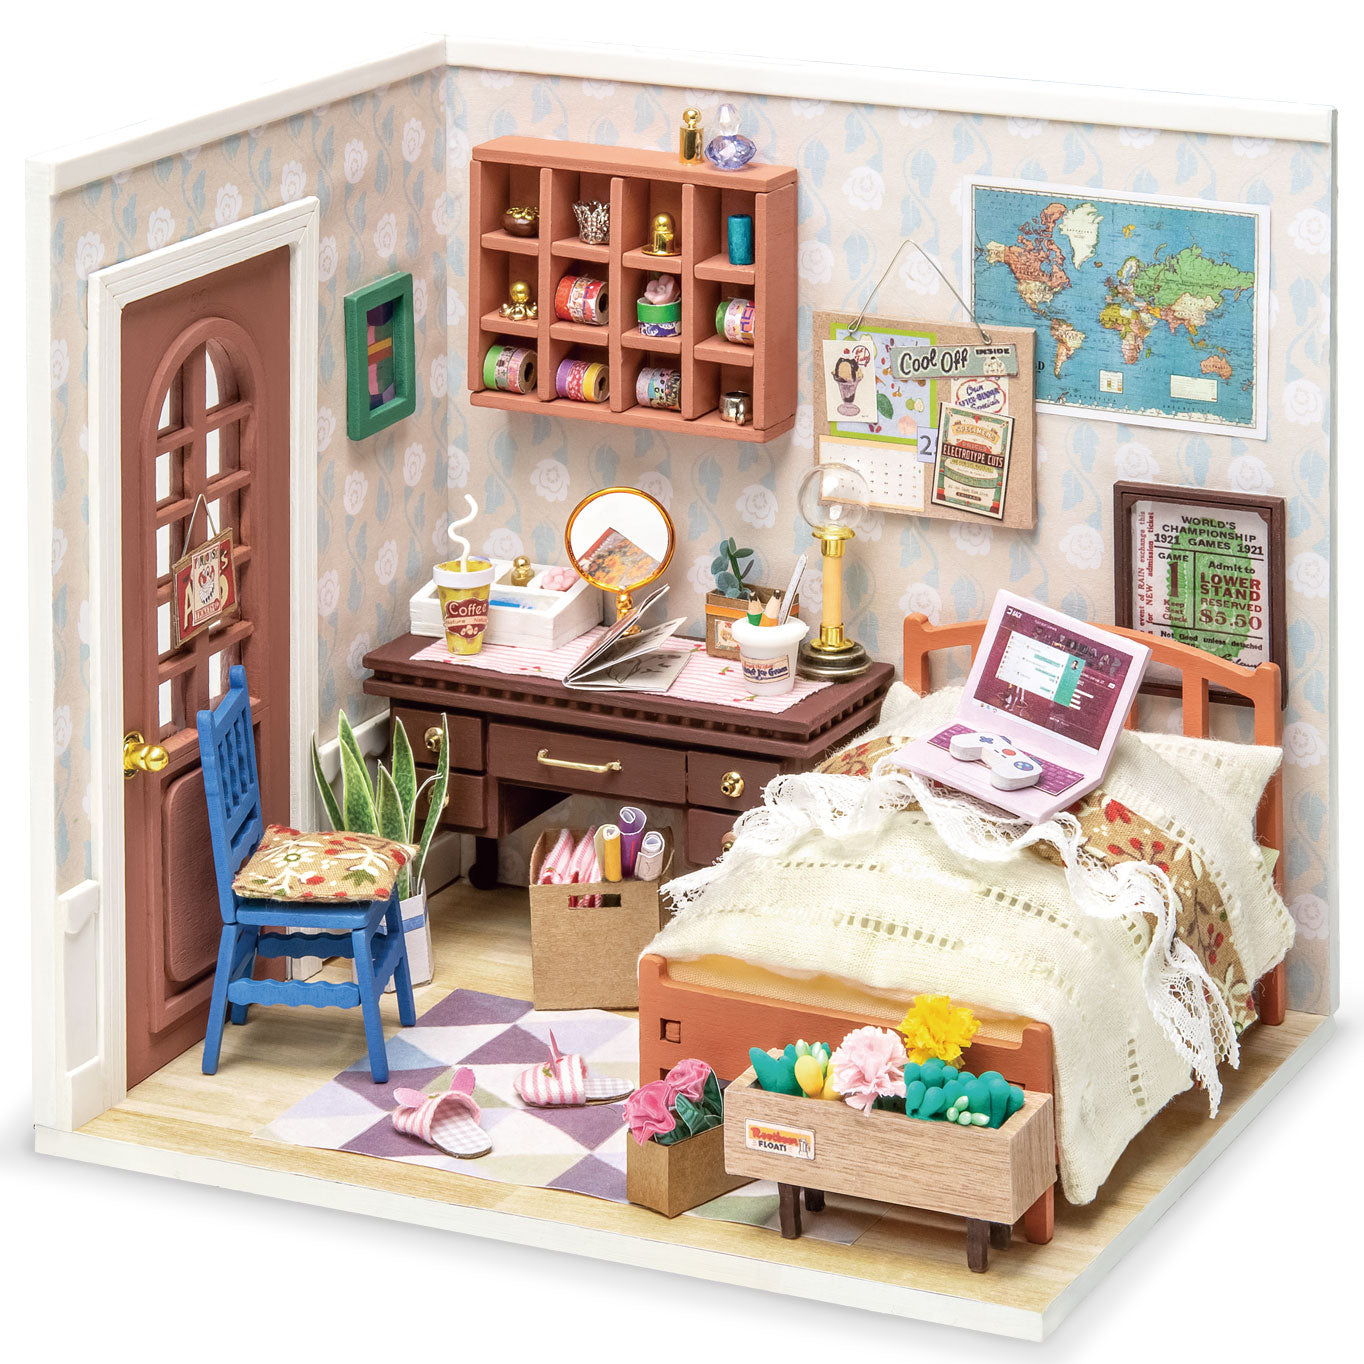 Annes slaapkamer (slaapkamer)-Miniatuurhuis-Robotime--